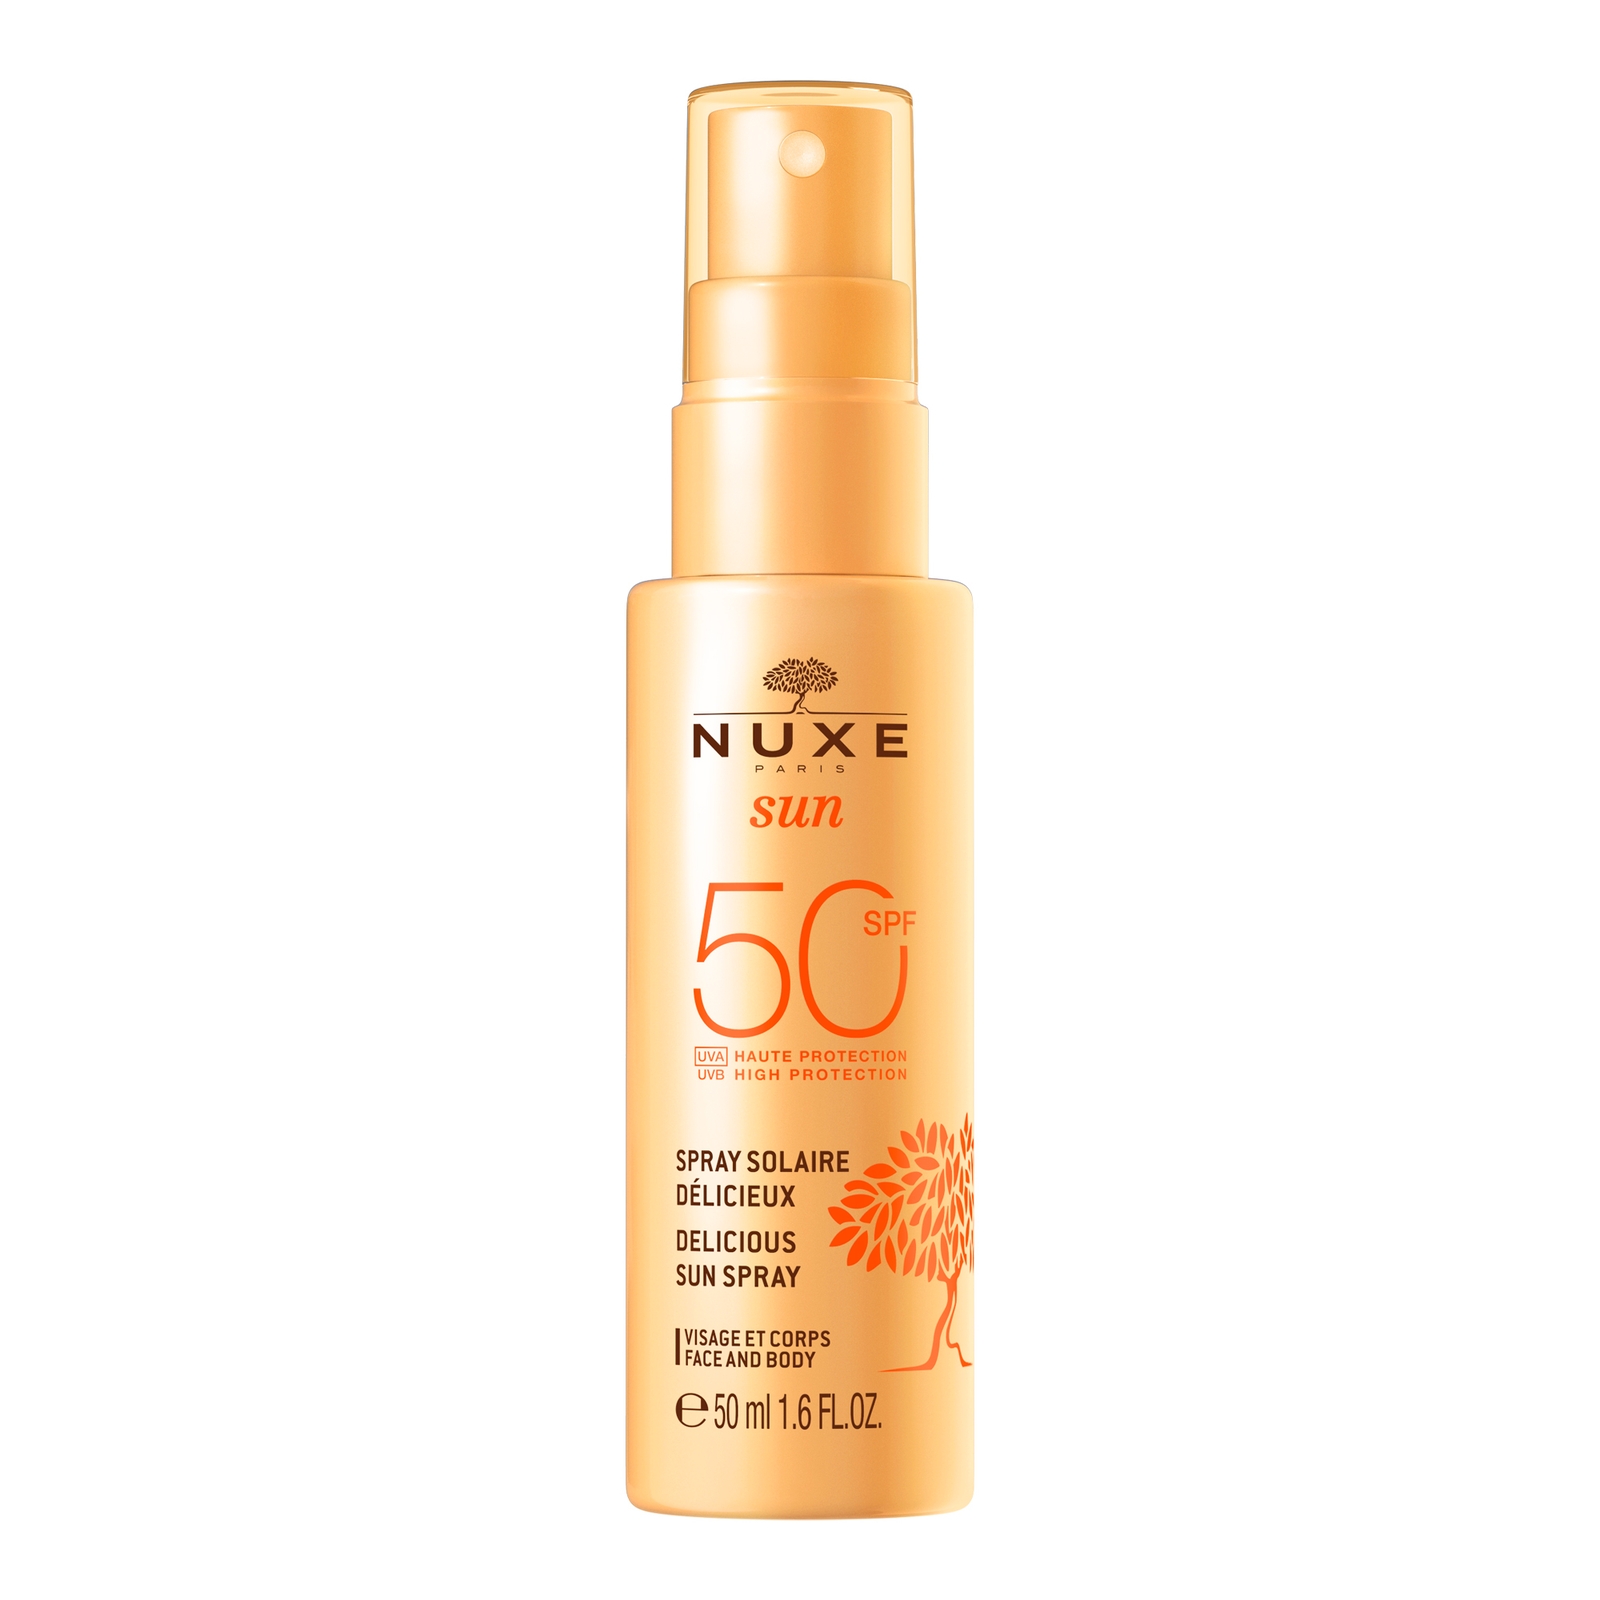 Nuxe Delicious Sun Spray High Protection Spf50 Face And Body,  Sun 50 ml In White